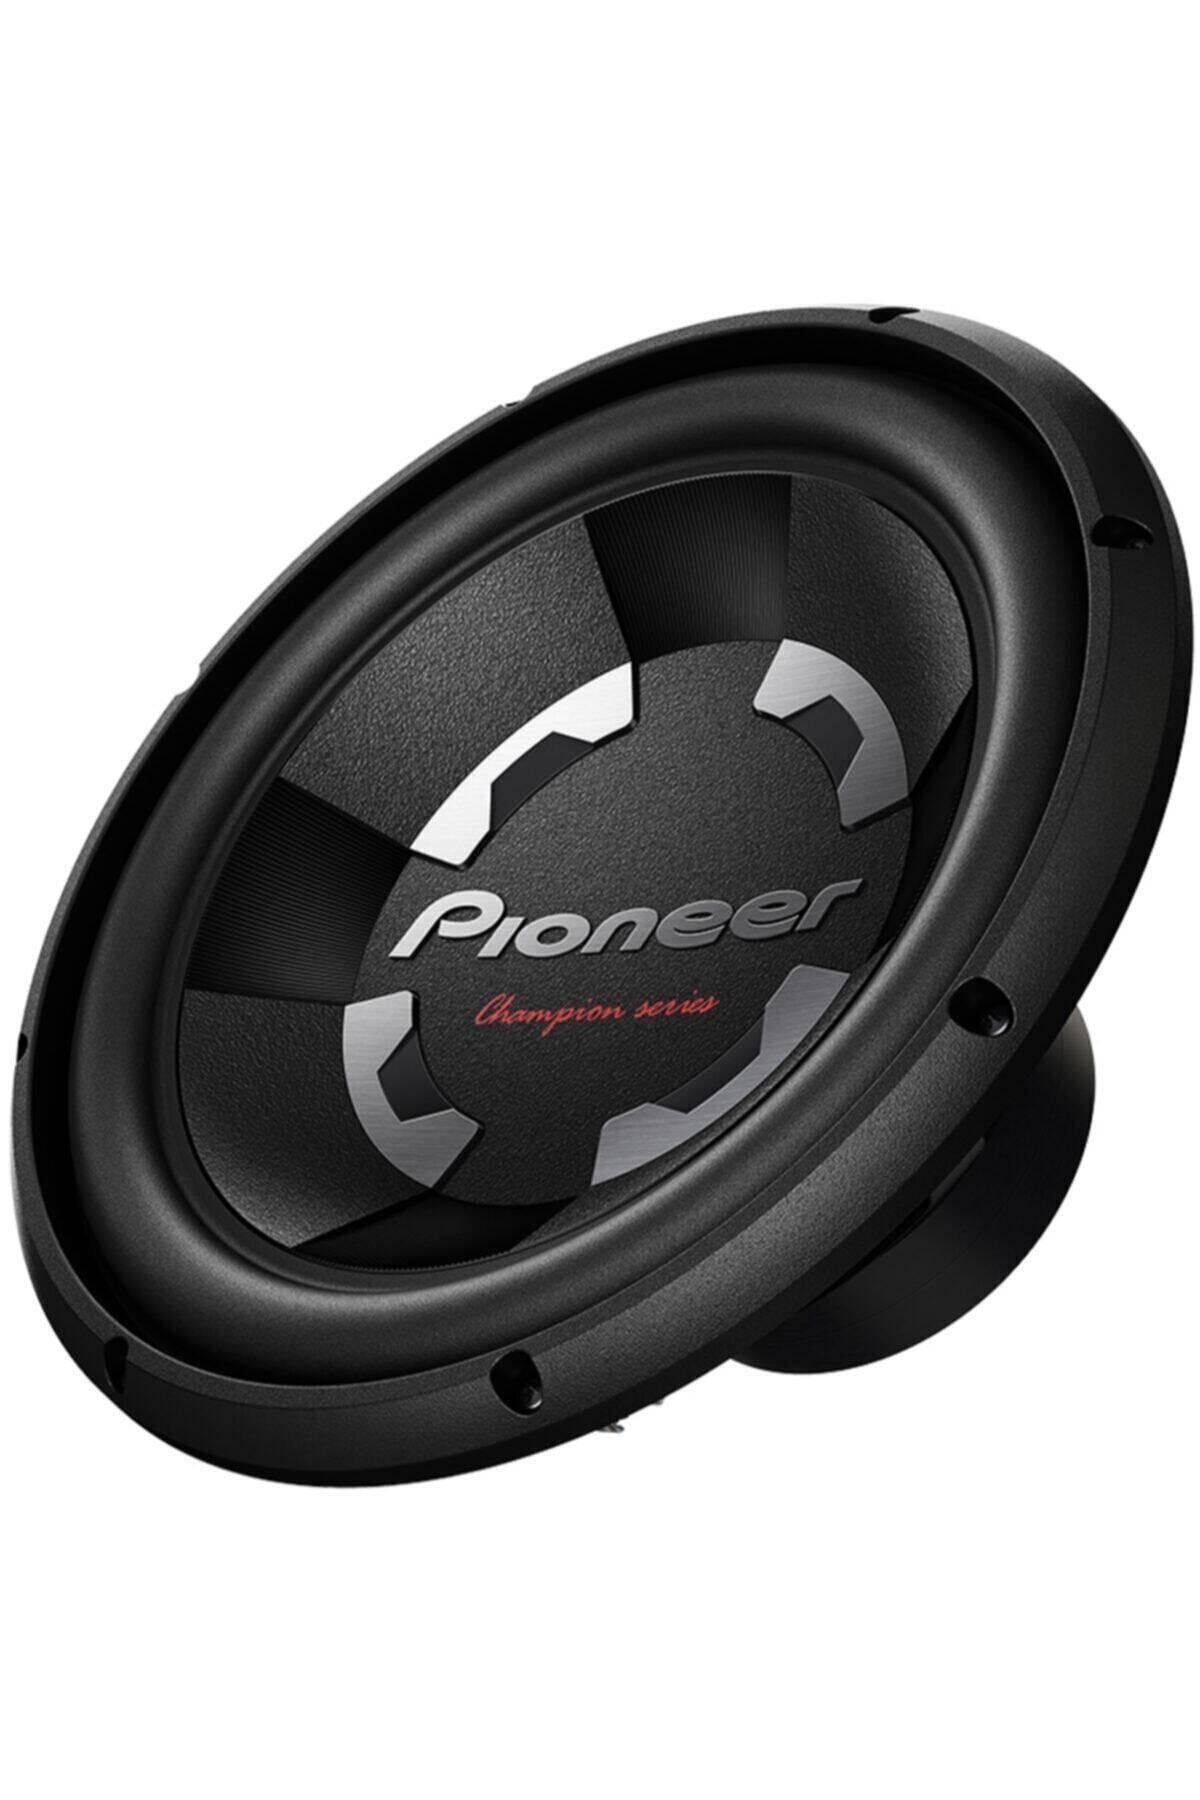 Pioneer Ts-300d4 1400 Watt 30 Cm Bass Subwoofer Hoparlör